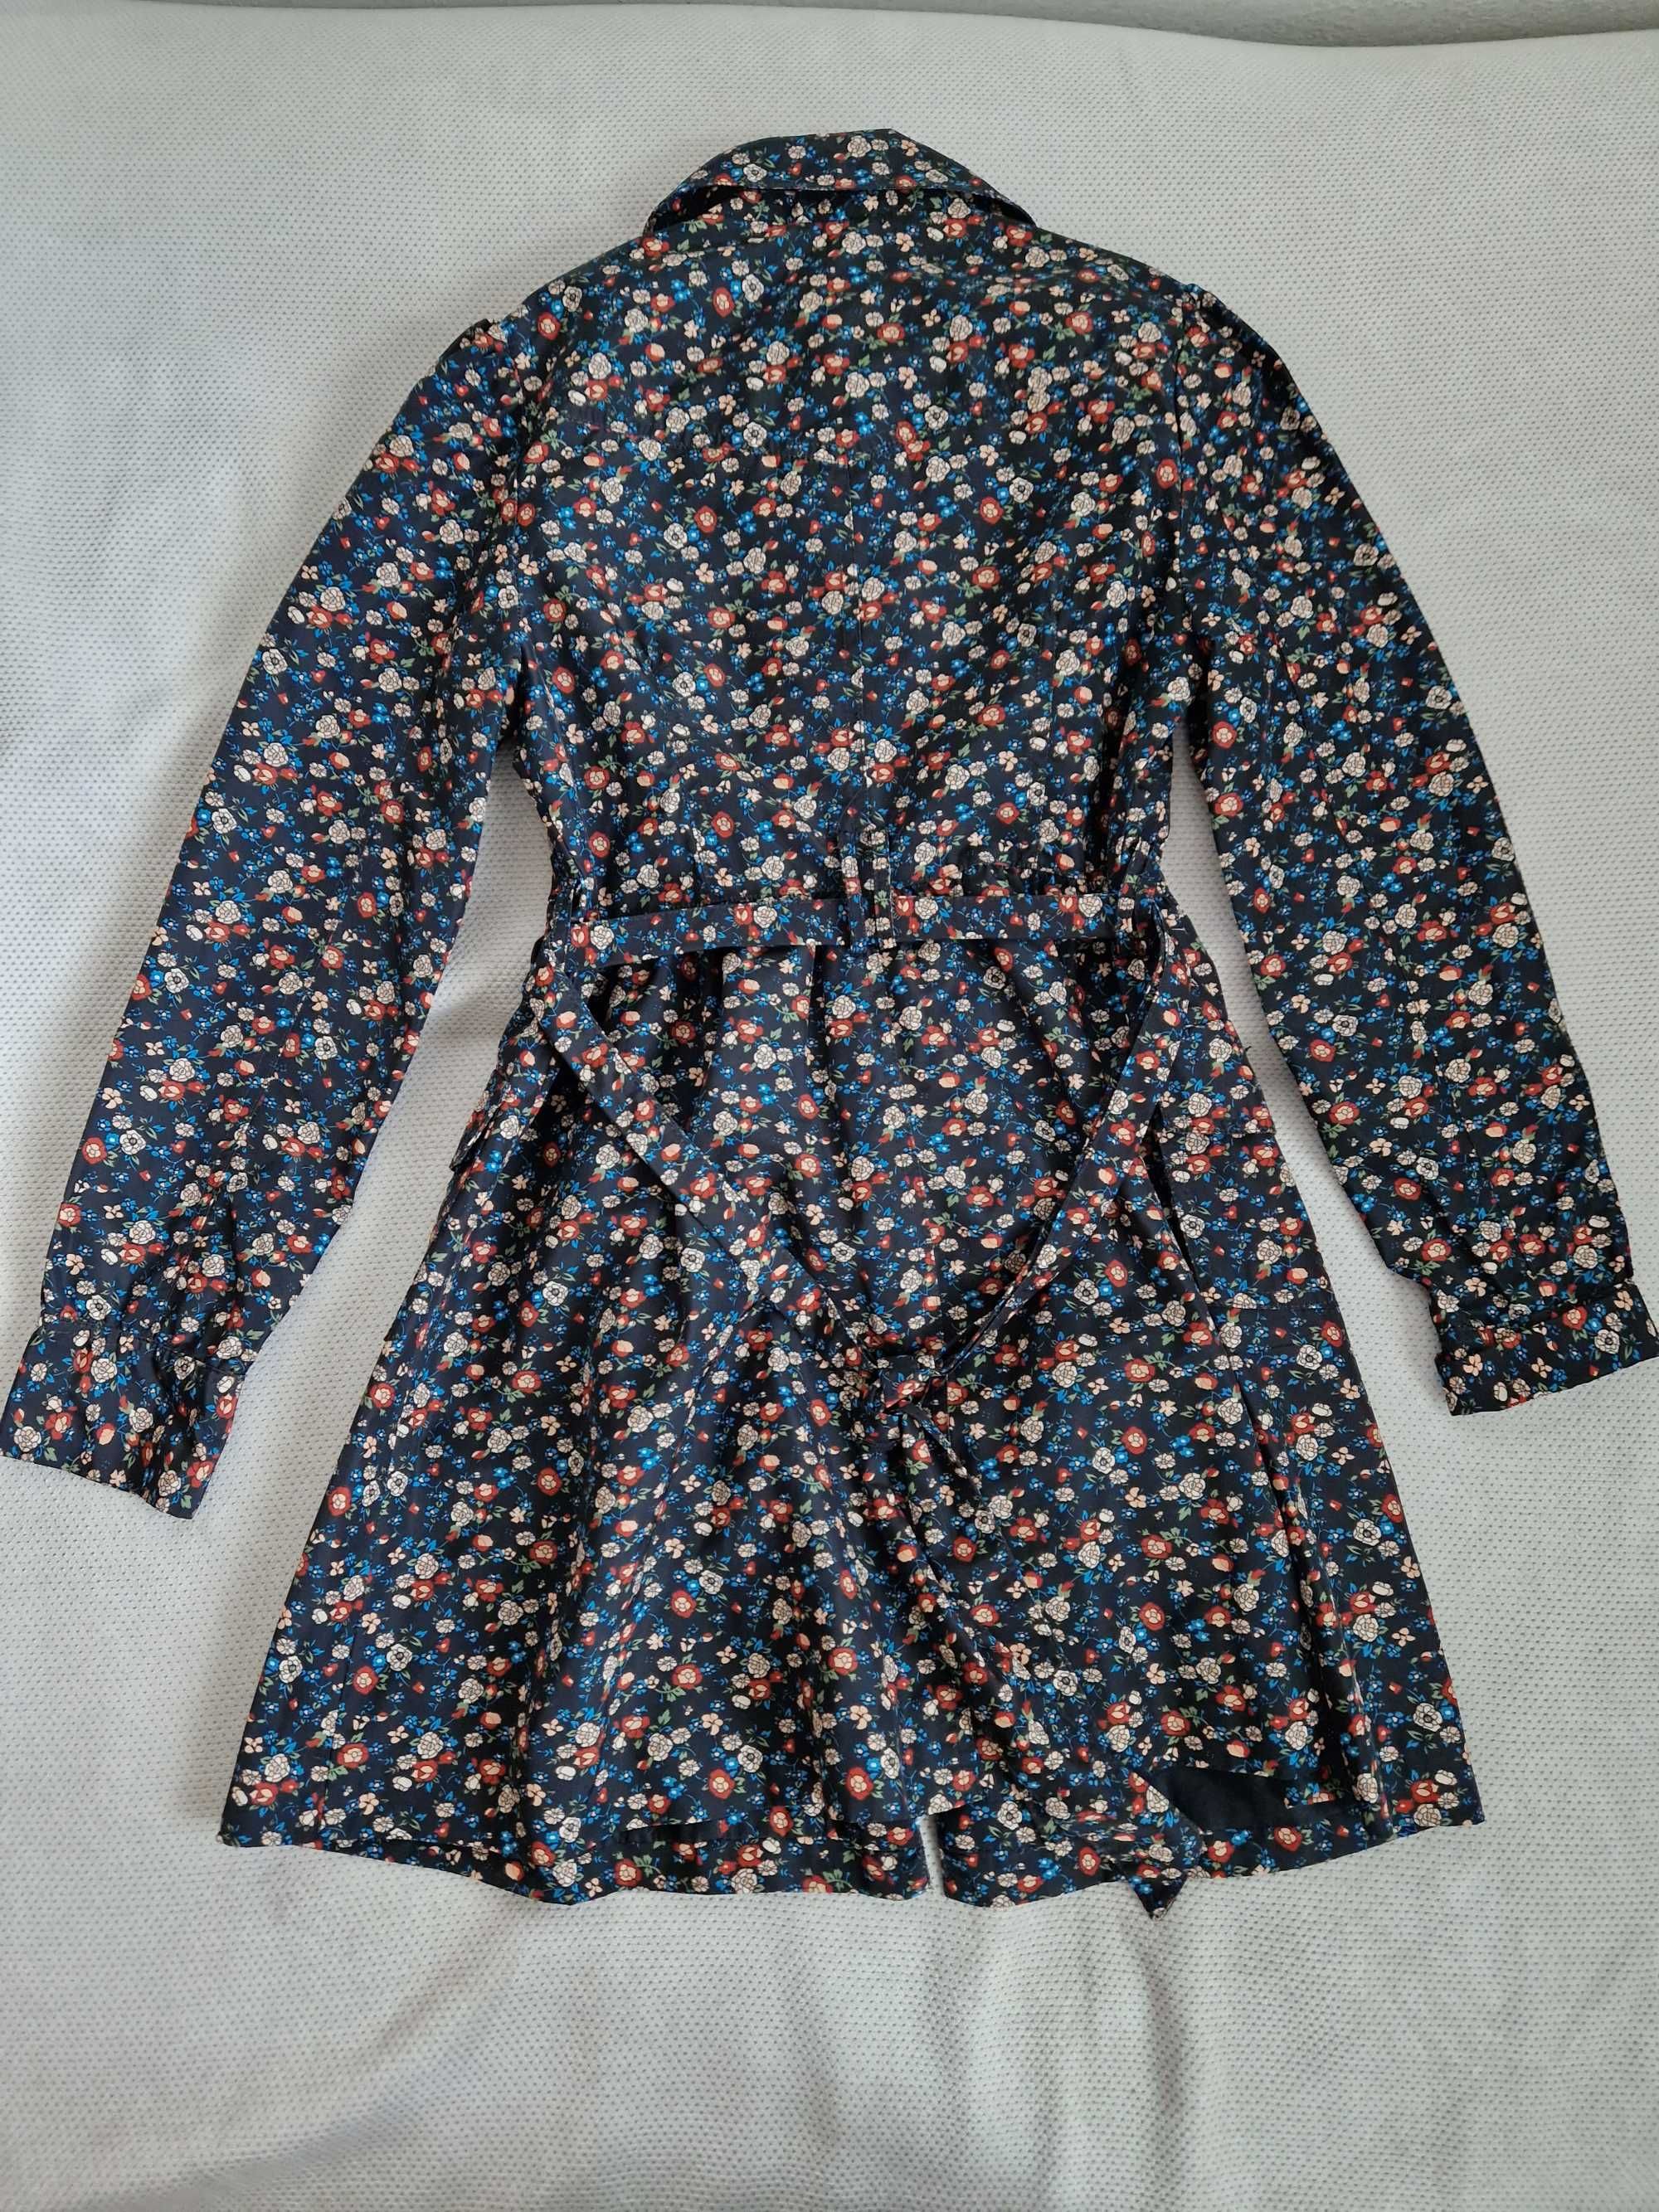 Płaszcz wiosenny F & F, dla dziewczynki rozmiar 146/152. Nie używany.